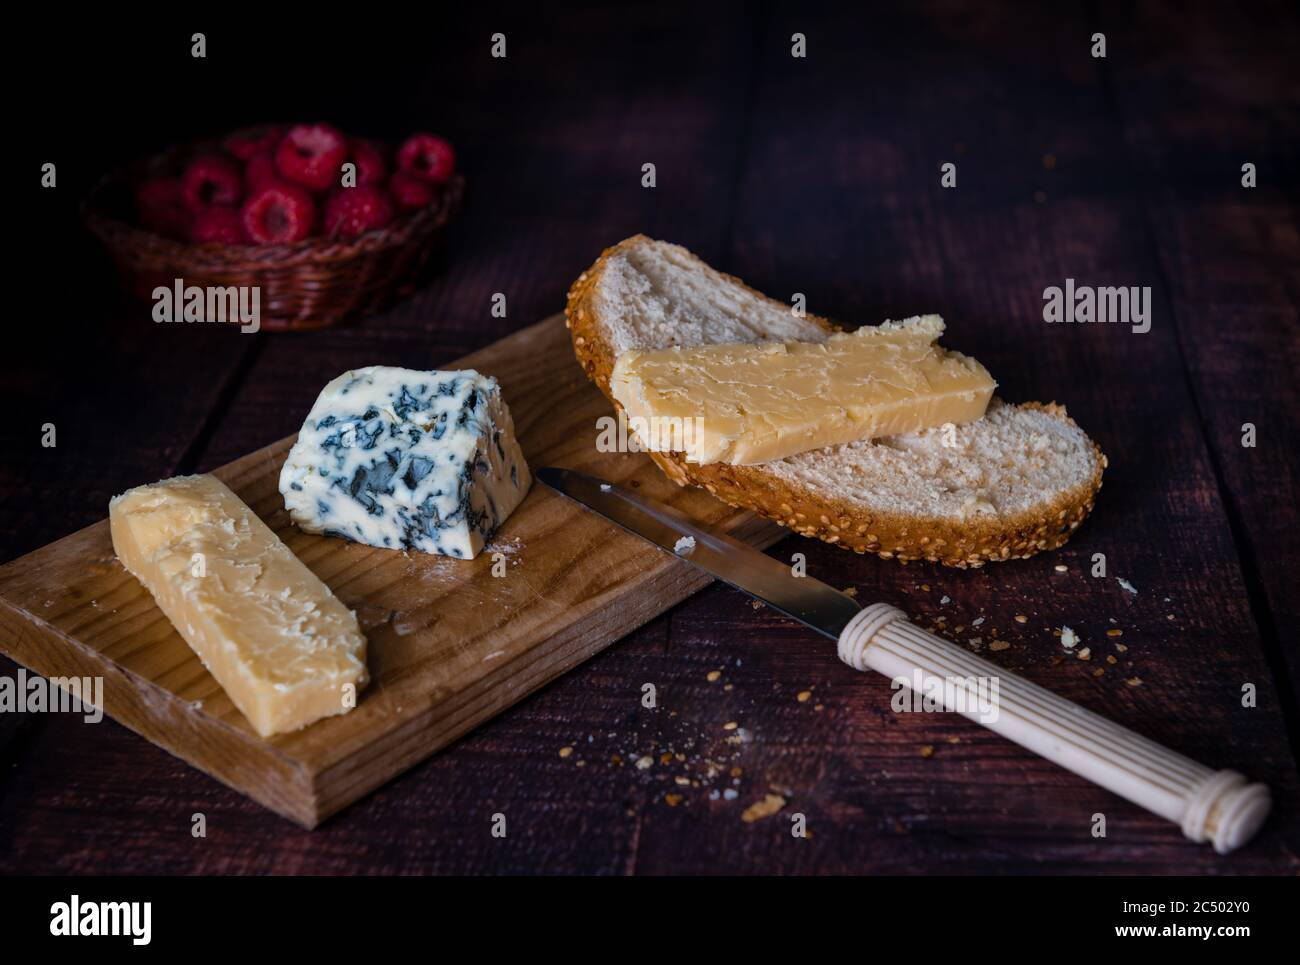 Brot mit gereiftem Cheddar und weichem Blauschimmelkäse auf einem Holzbrett mit einem Korb Himbeeren in einem dunklen Hintergrund. Stockfoto